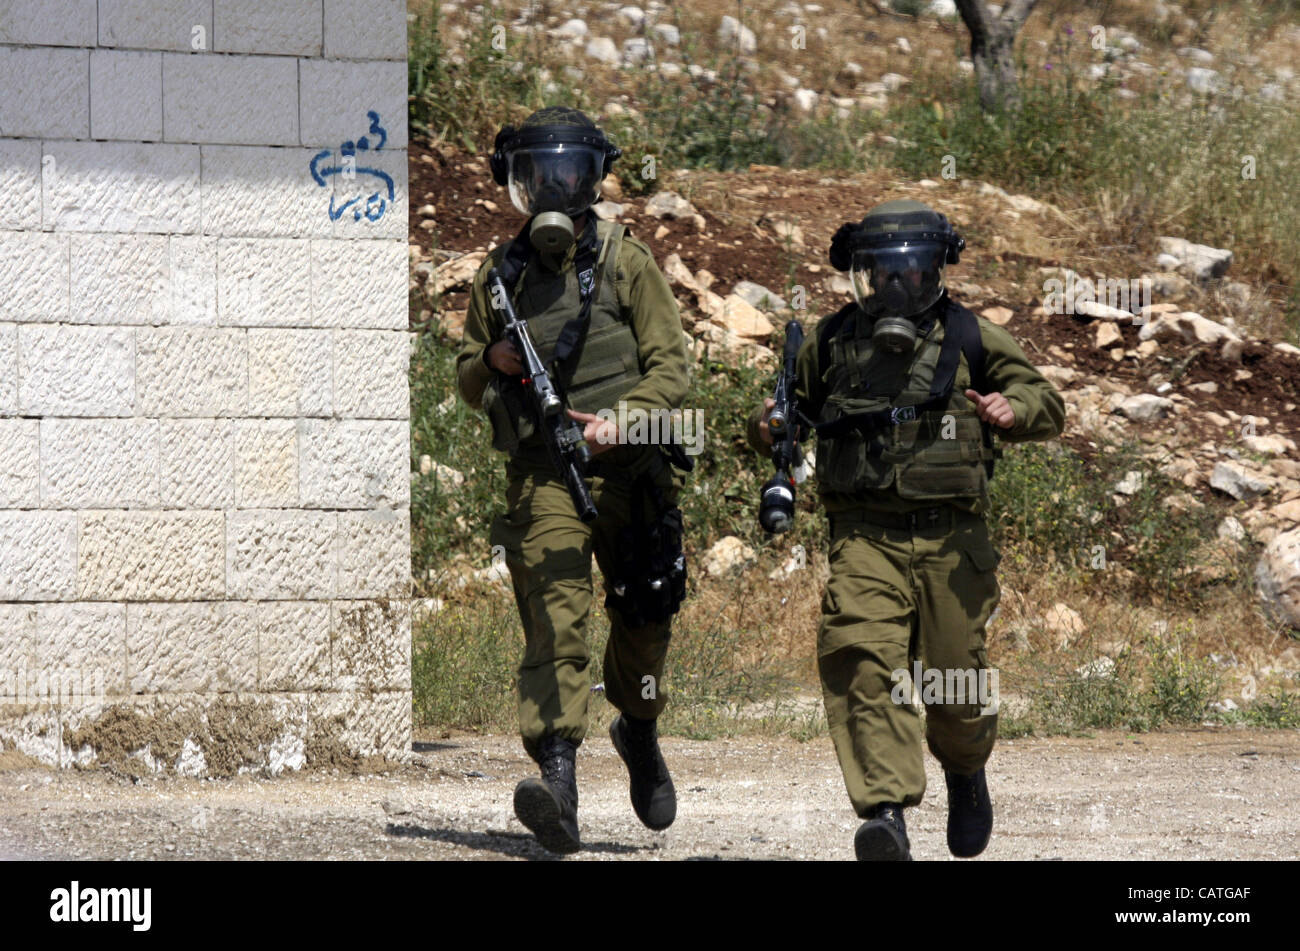 20 avril 2012 - Naplouse, Cisjordanie, Territoires palestiniens - des soldats israéliens fire gaz lacrymogènes contre les manifestants palestiniens comme ils manifester contre l'expropriation de terres palestiniennes par Israël dans le village de Kafr Qaddum, près de la ville du nord de Naplouse en Cisjordanie occupée, Banque D'Images